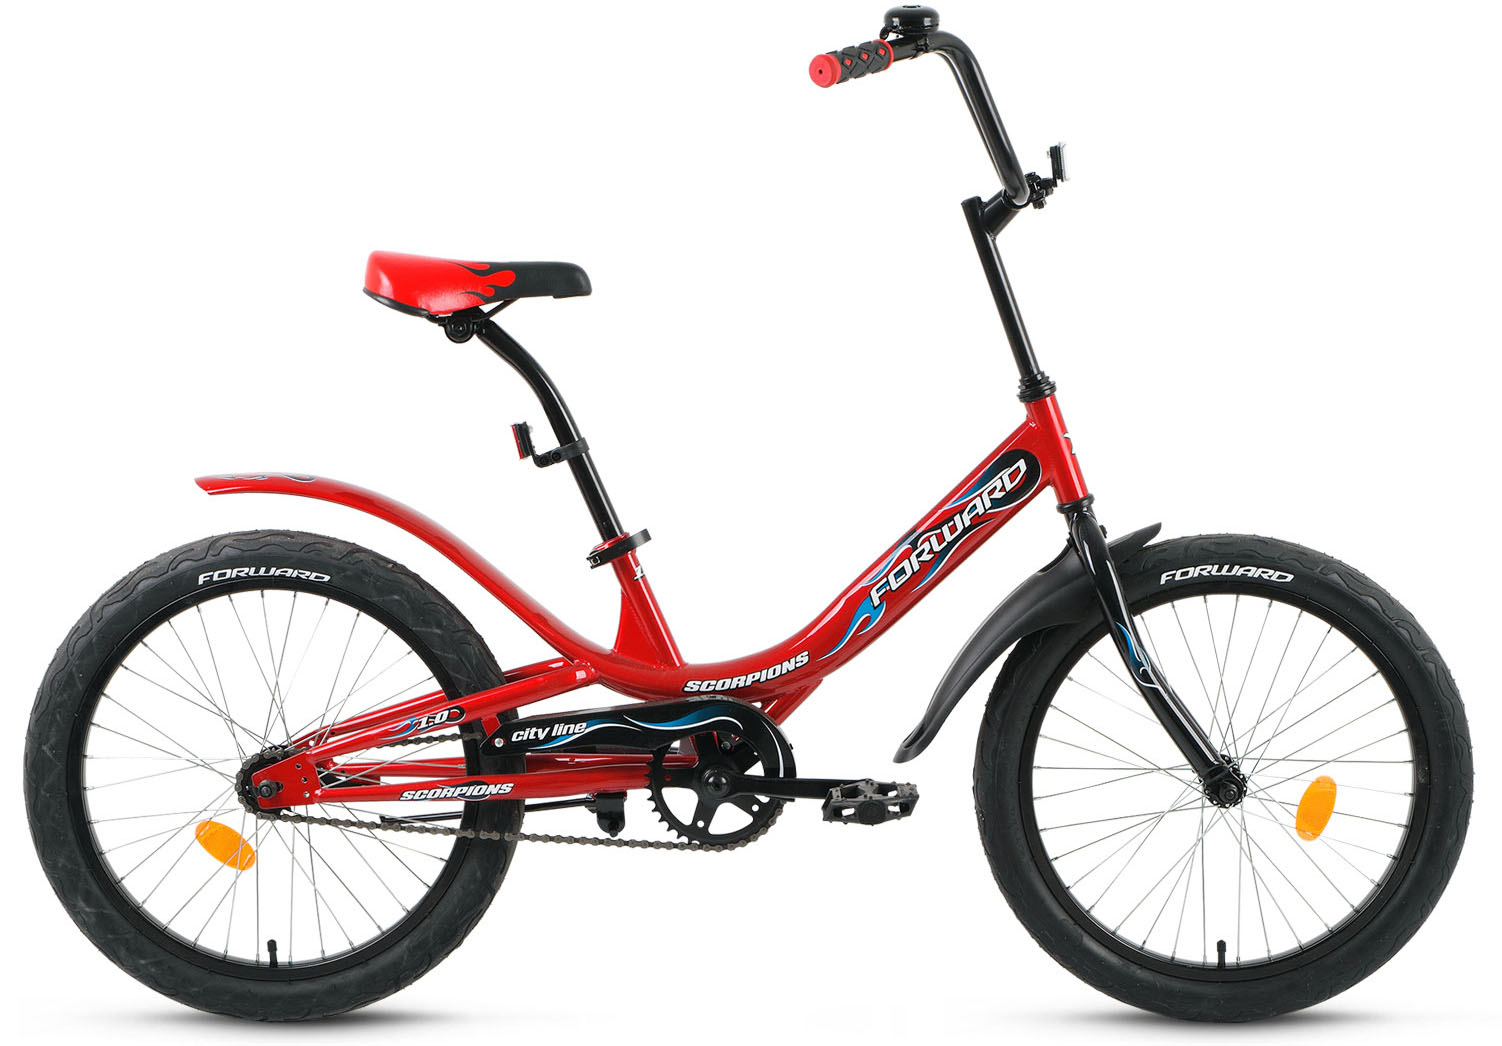  Отзывы о Детском велосипеде Forward Scorpions 20 1.0 2019